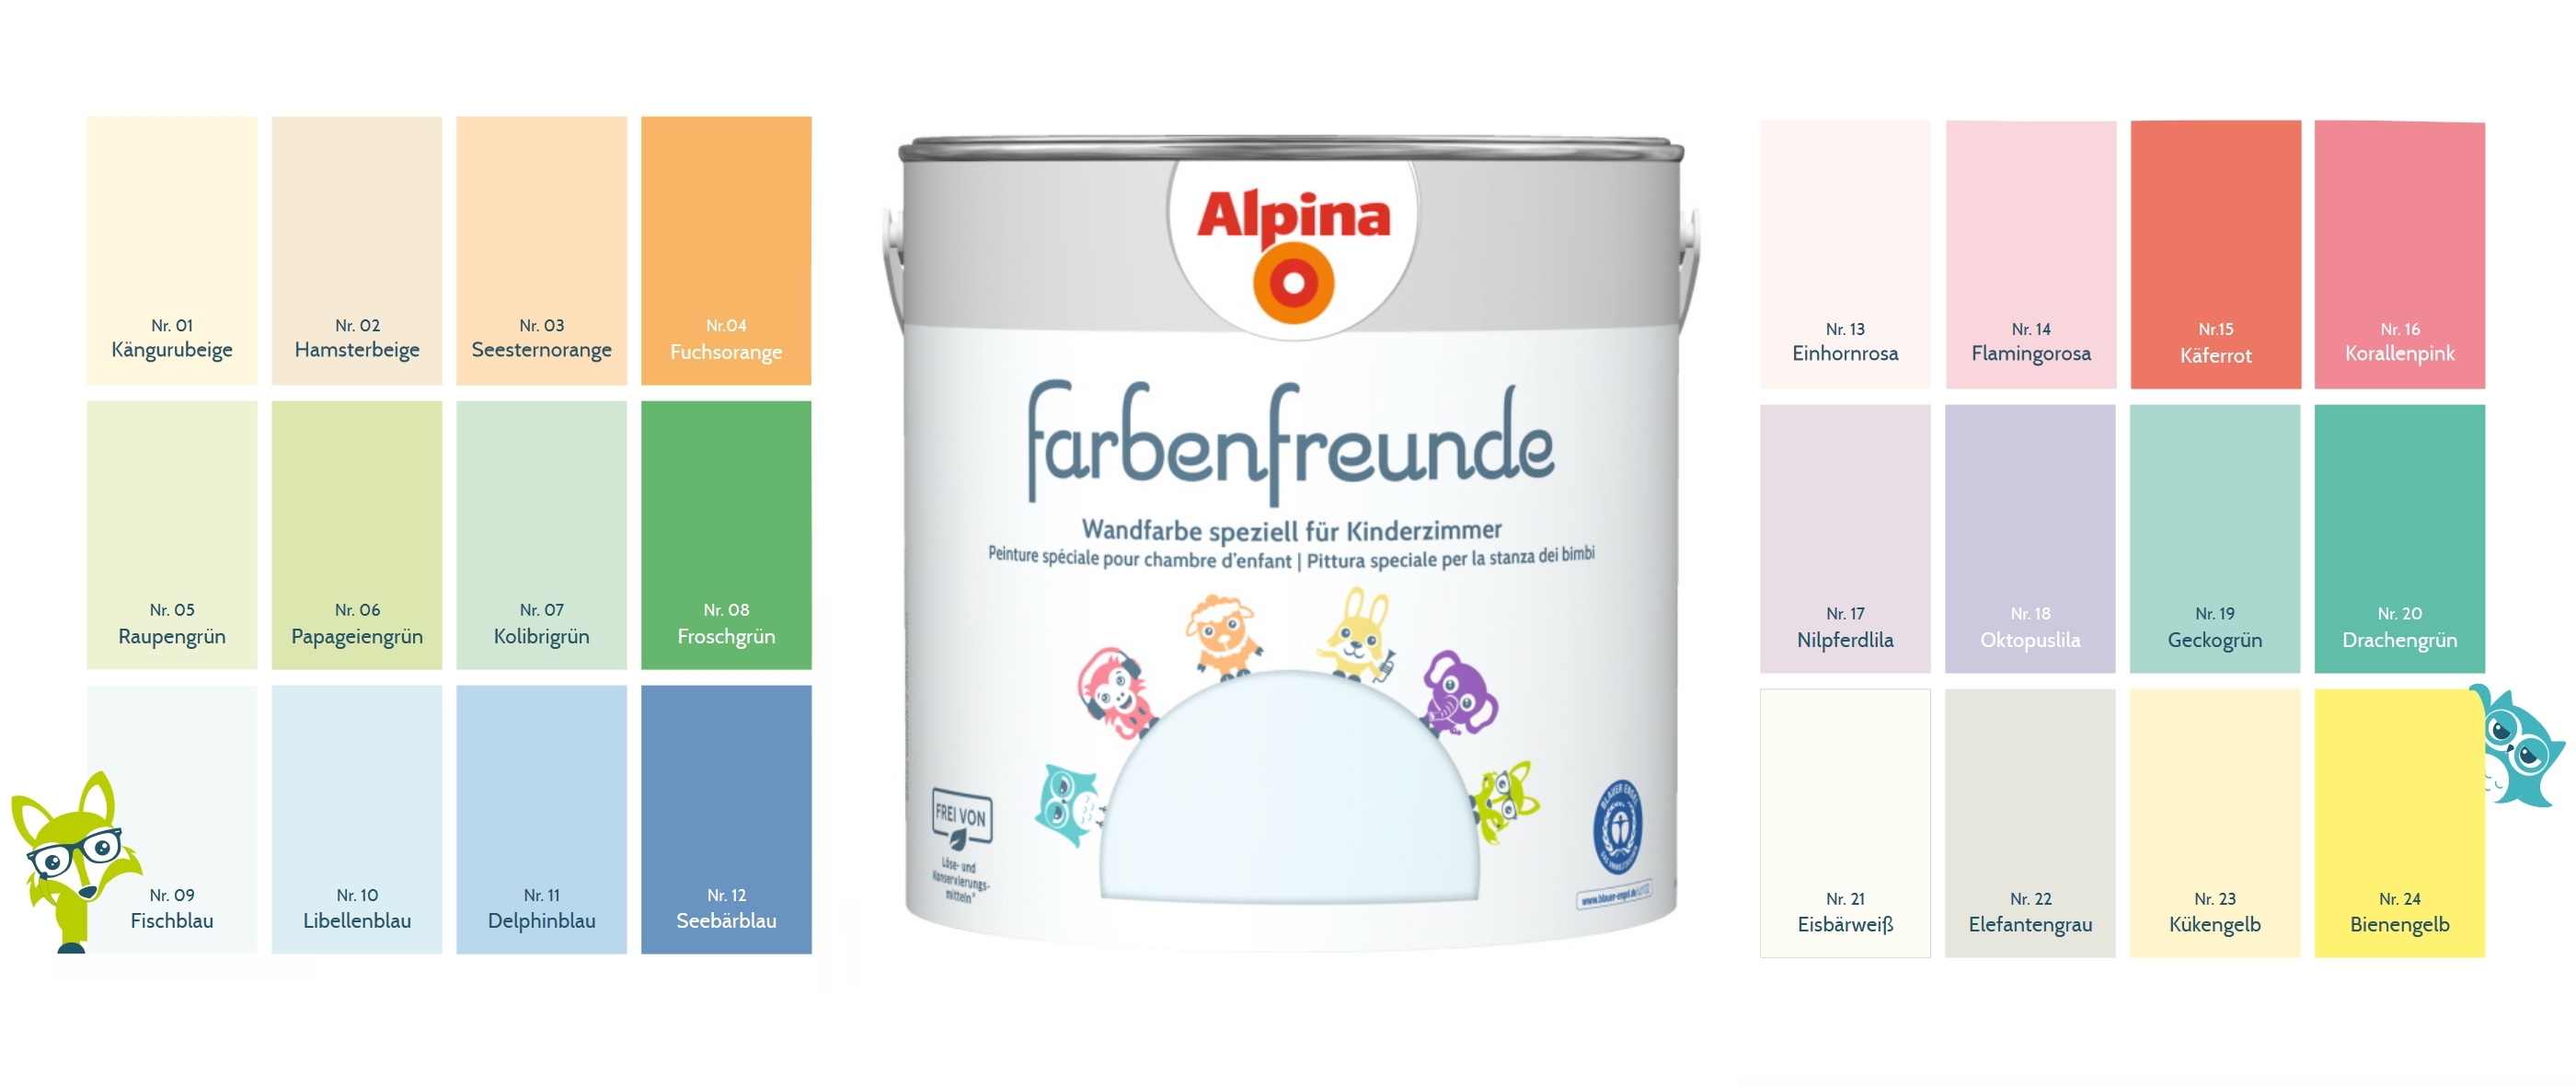 Posten Alpina 2,5 L. Farbenfreunde, Wandfarben speziell für Kinderzimmer